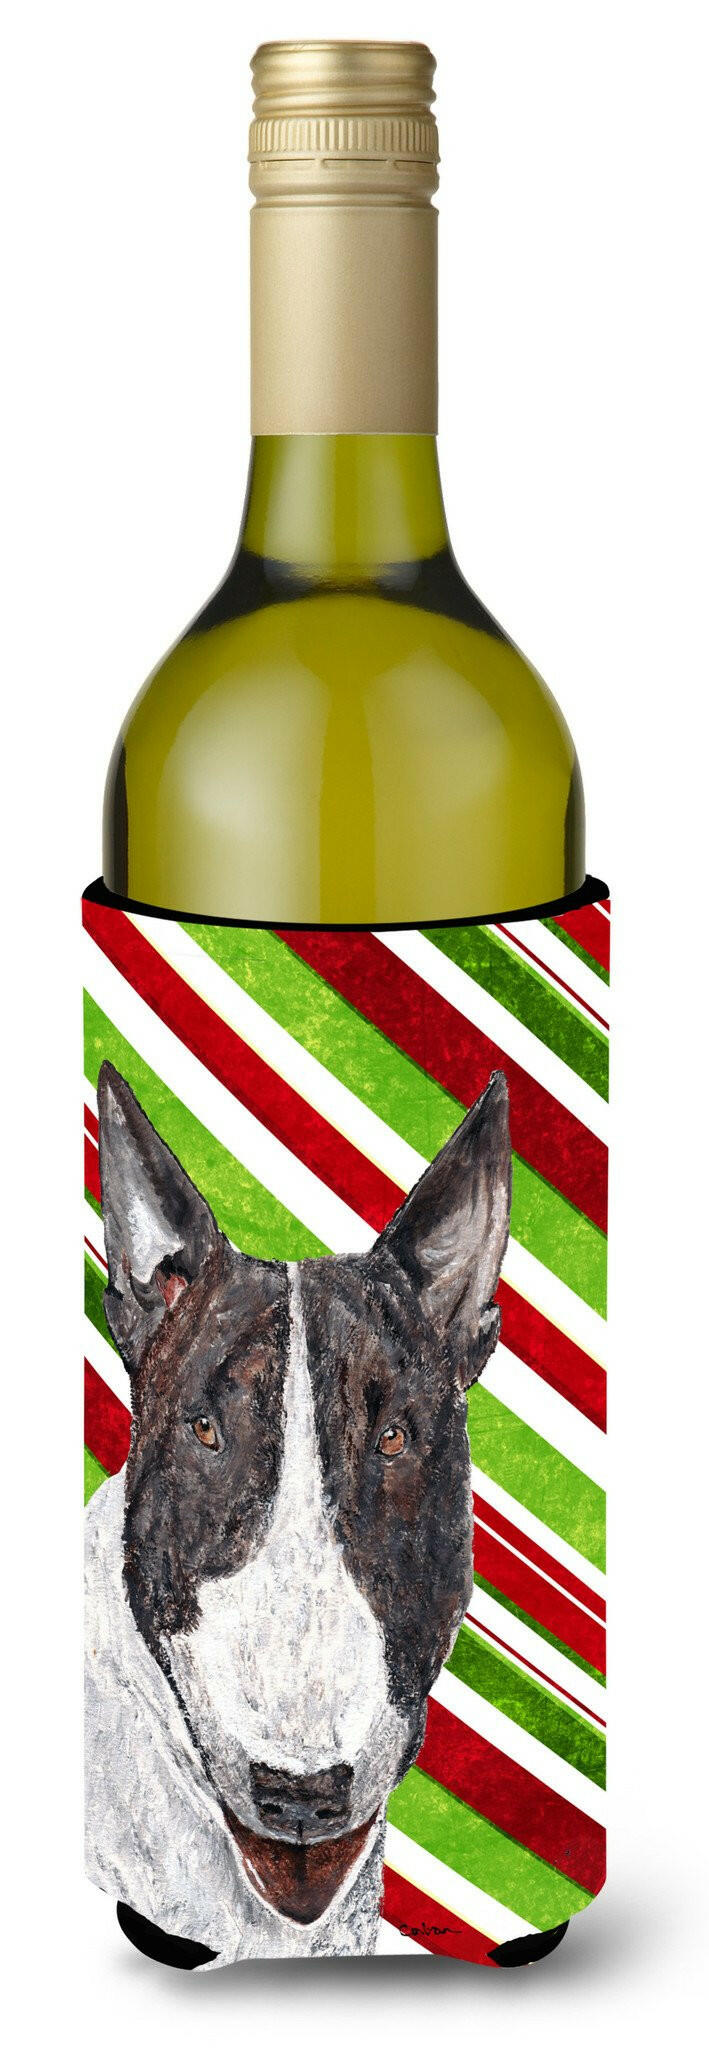 Bull Terrier Candy Cane Christmas Wine Bottle Beverage Insulator Beverage Insulator Hugger by Caroline's Treasures